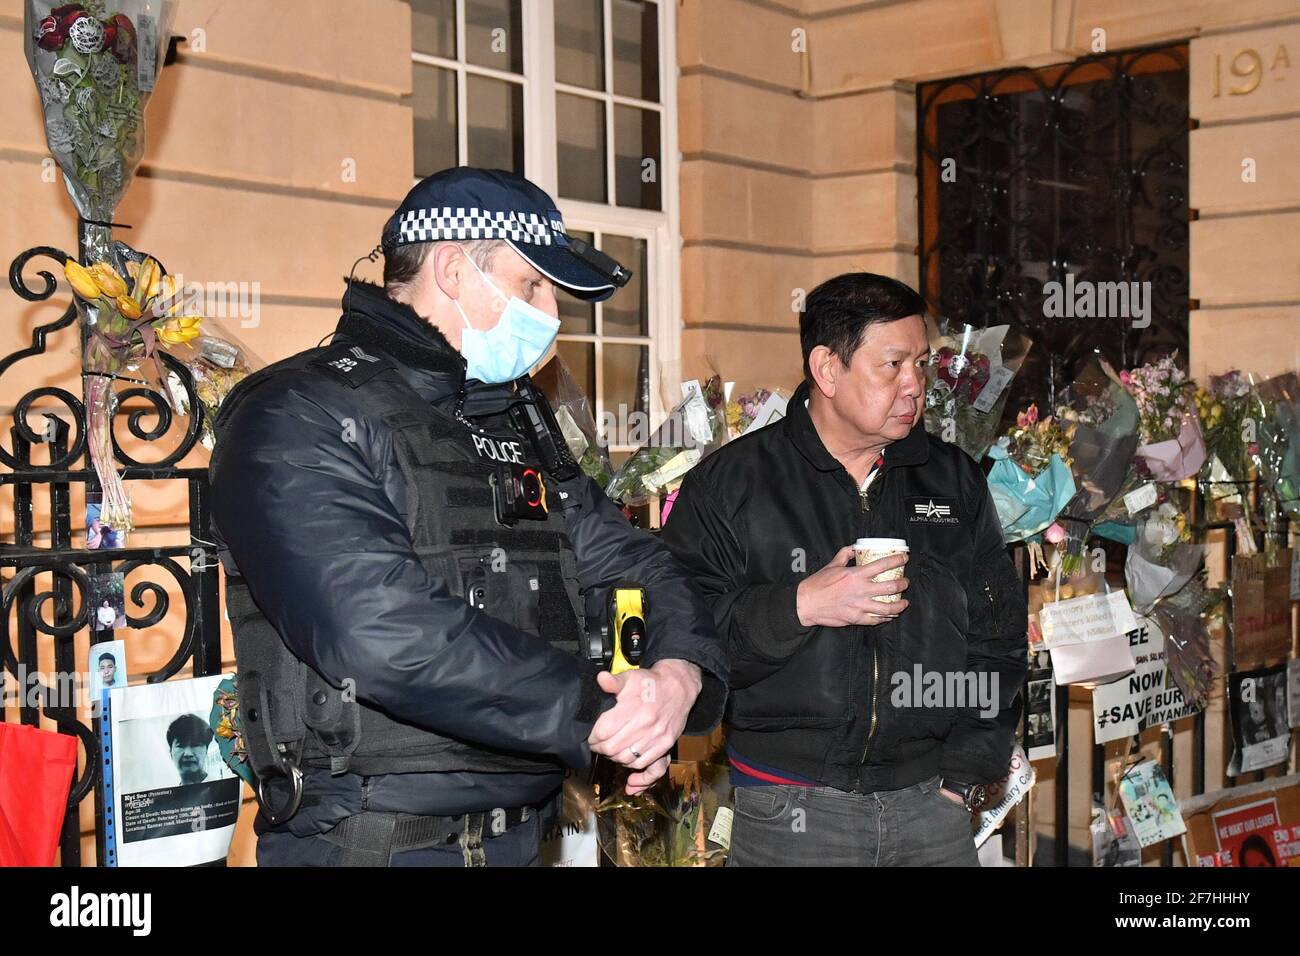 L'ambasciatore del Myanmar nel Regno Unito Kyaw Zwar Minn parla agli agenti di polizia dopo aver provato e non è riuscito ad entrare nell'ambasciata del Myanmar a Mayfair, Londra. Data immagine: Mercoledì 7 aprile 2021. Foto Stock